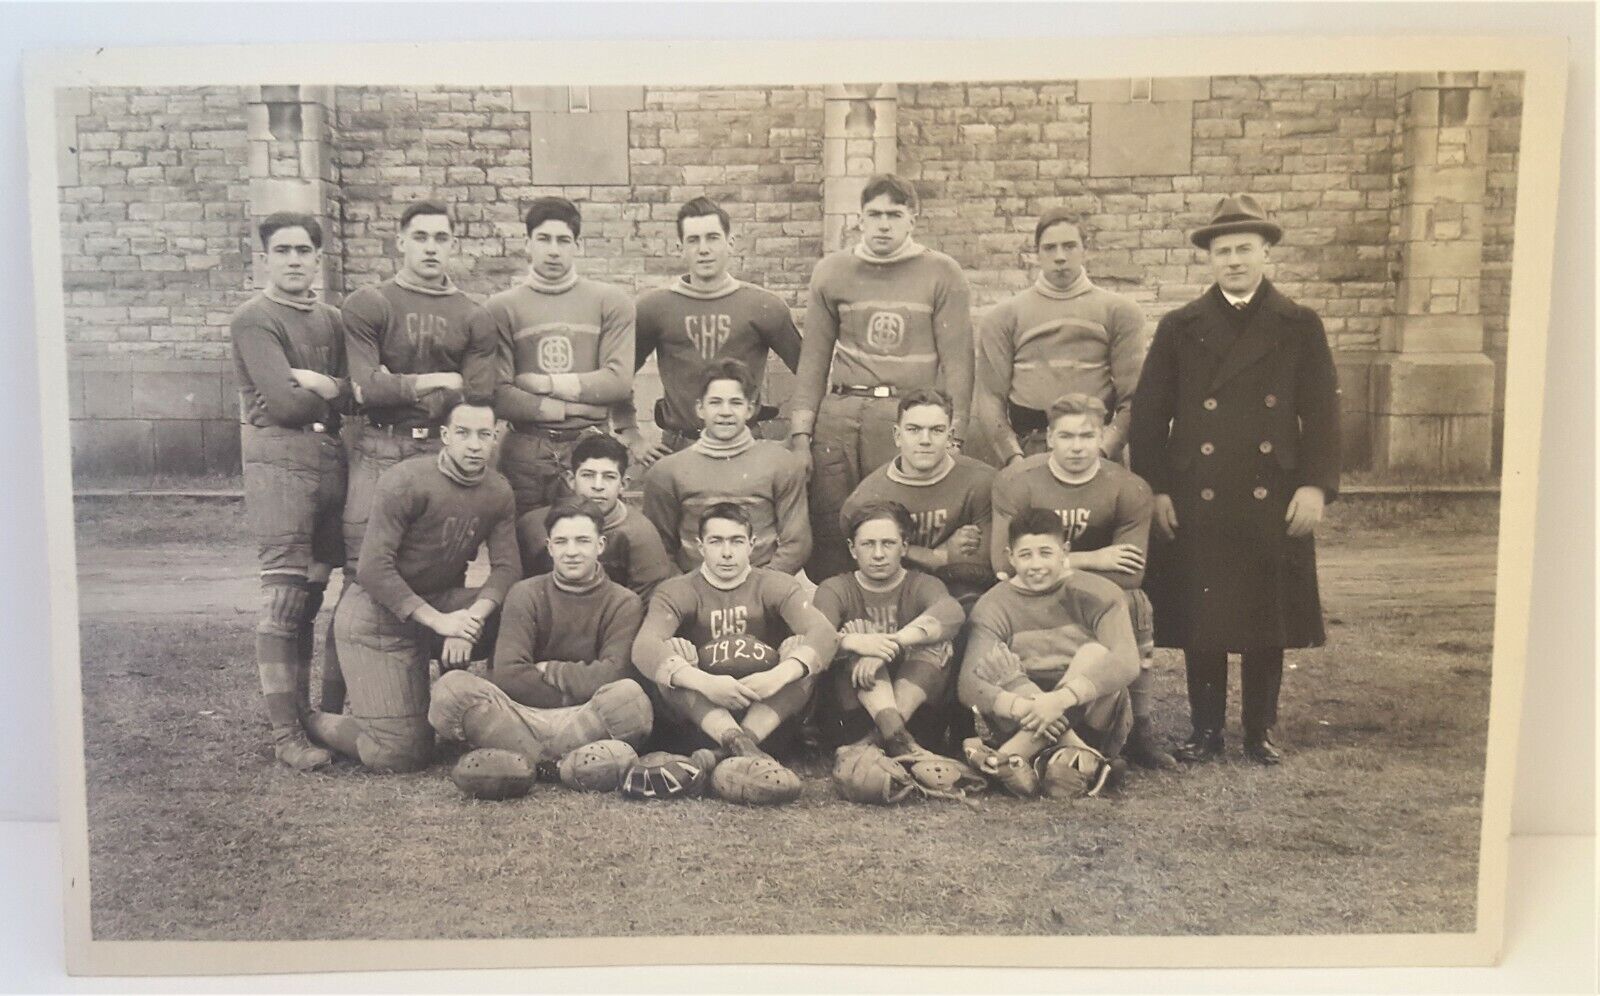 RPPC Canada Postcard CHS Football Team 1925 Antique